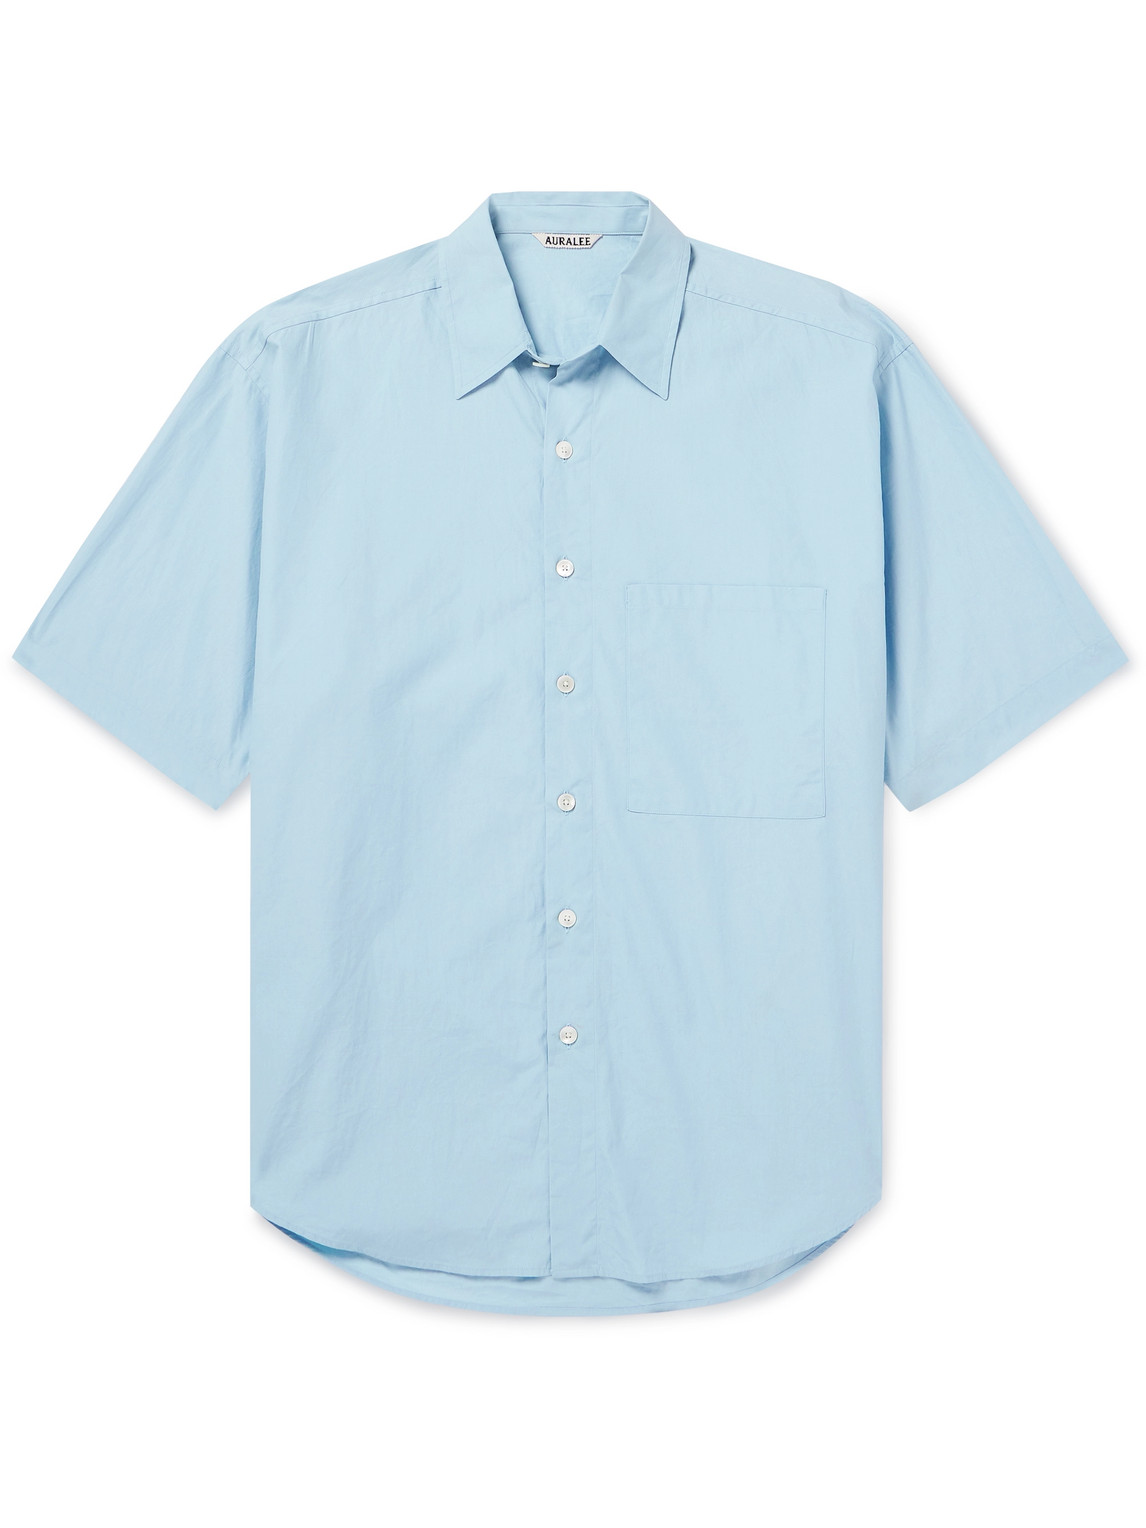 Auralee Cotton Shirt In Blue